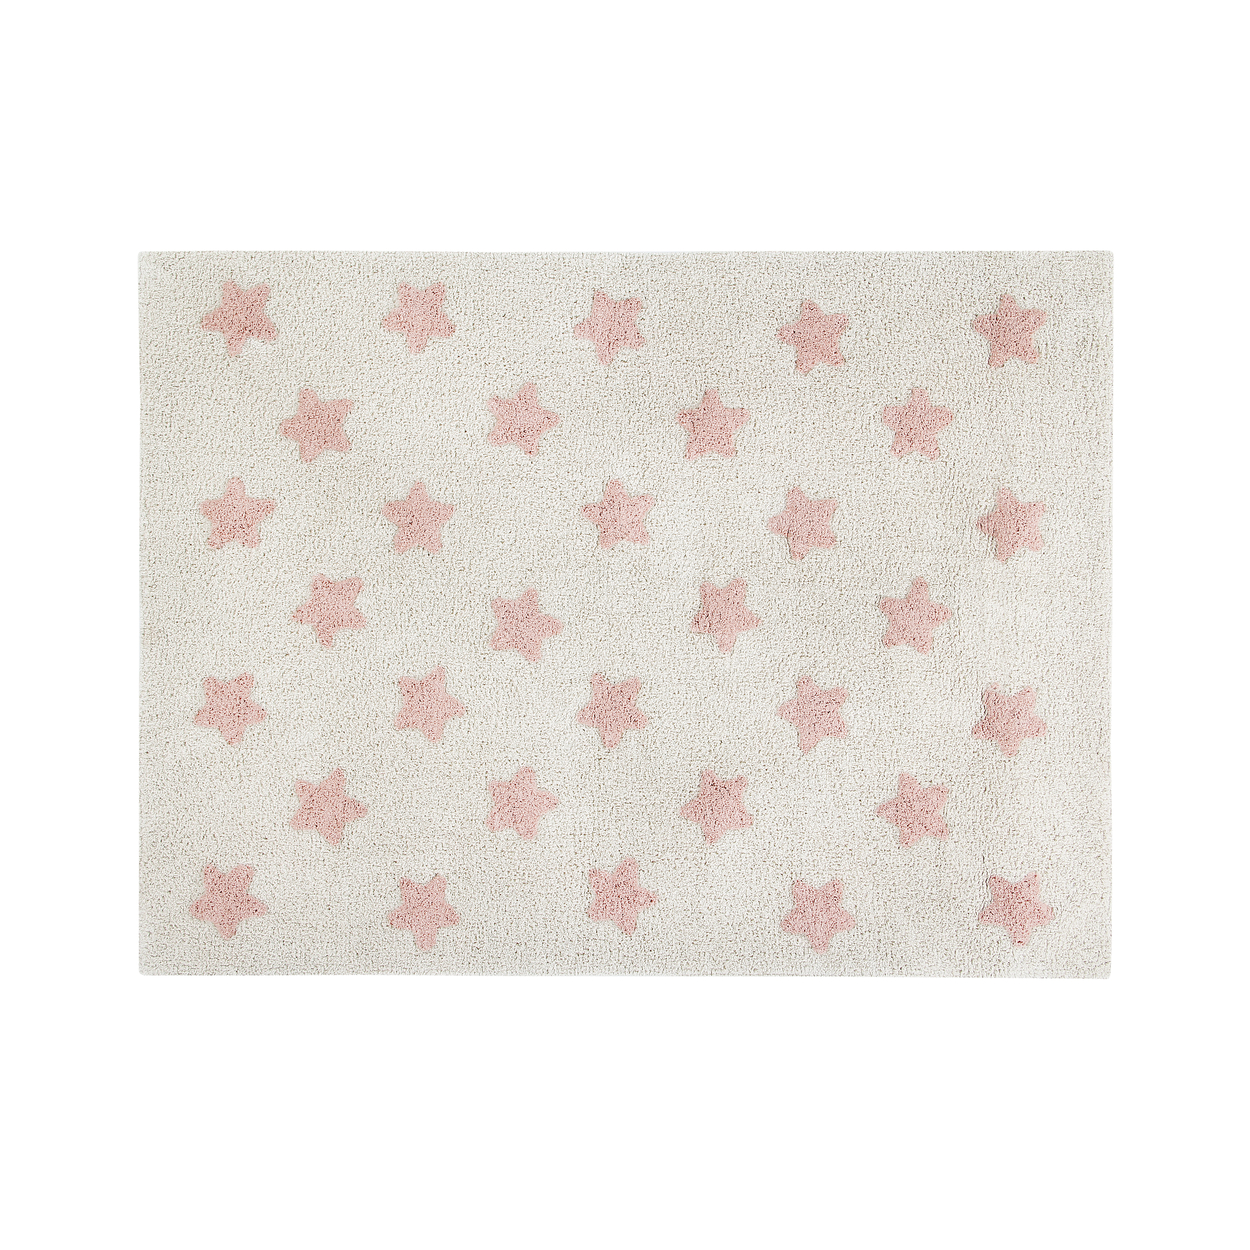 Tapis coton lavable étoiles nude 120x160cm